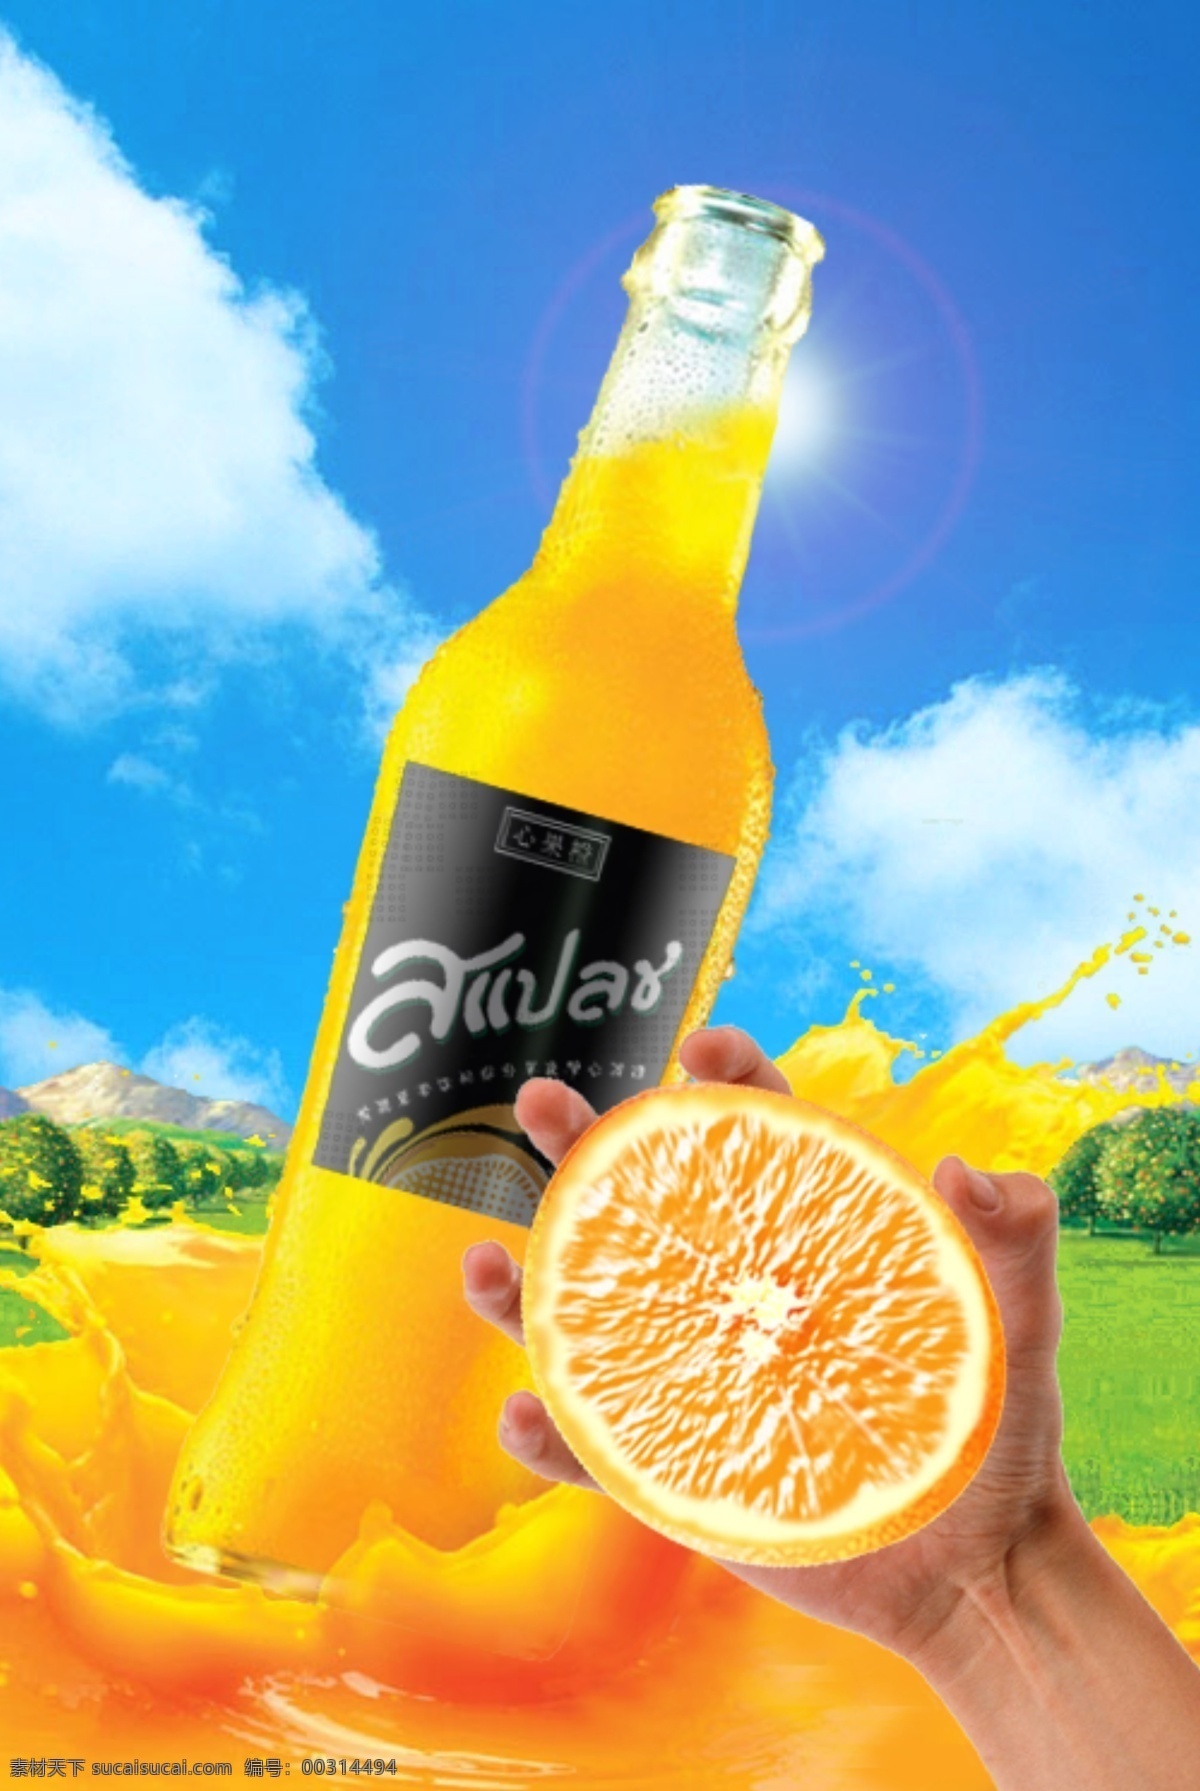 夏日 冰 爽 饮料 广告 图 冰爽 广告图 柠檬 橙汁 水果 创意 黄色